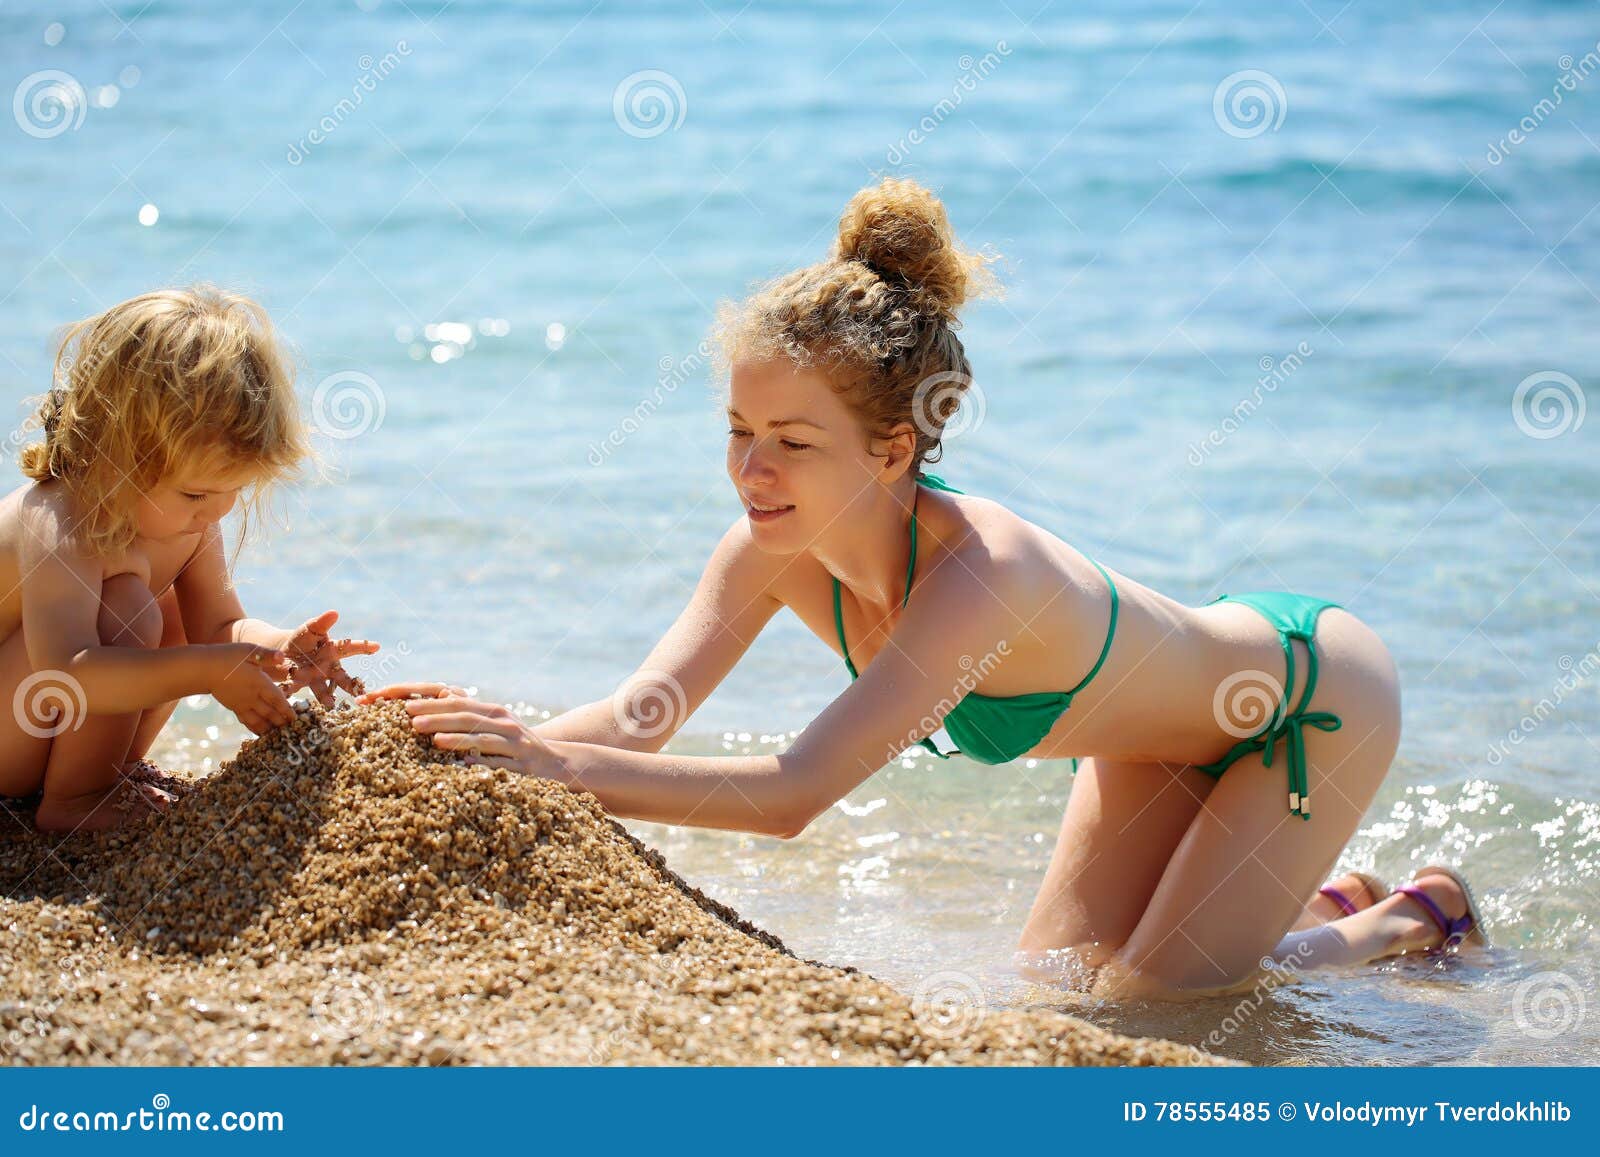 за голыми детьми на пляже фото 116